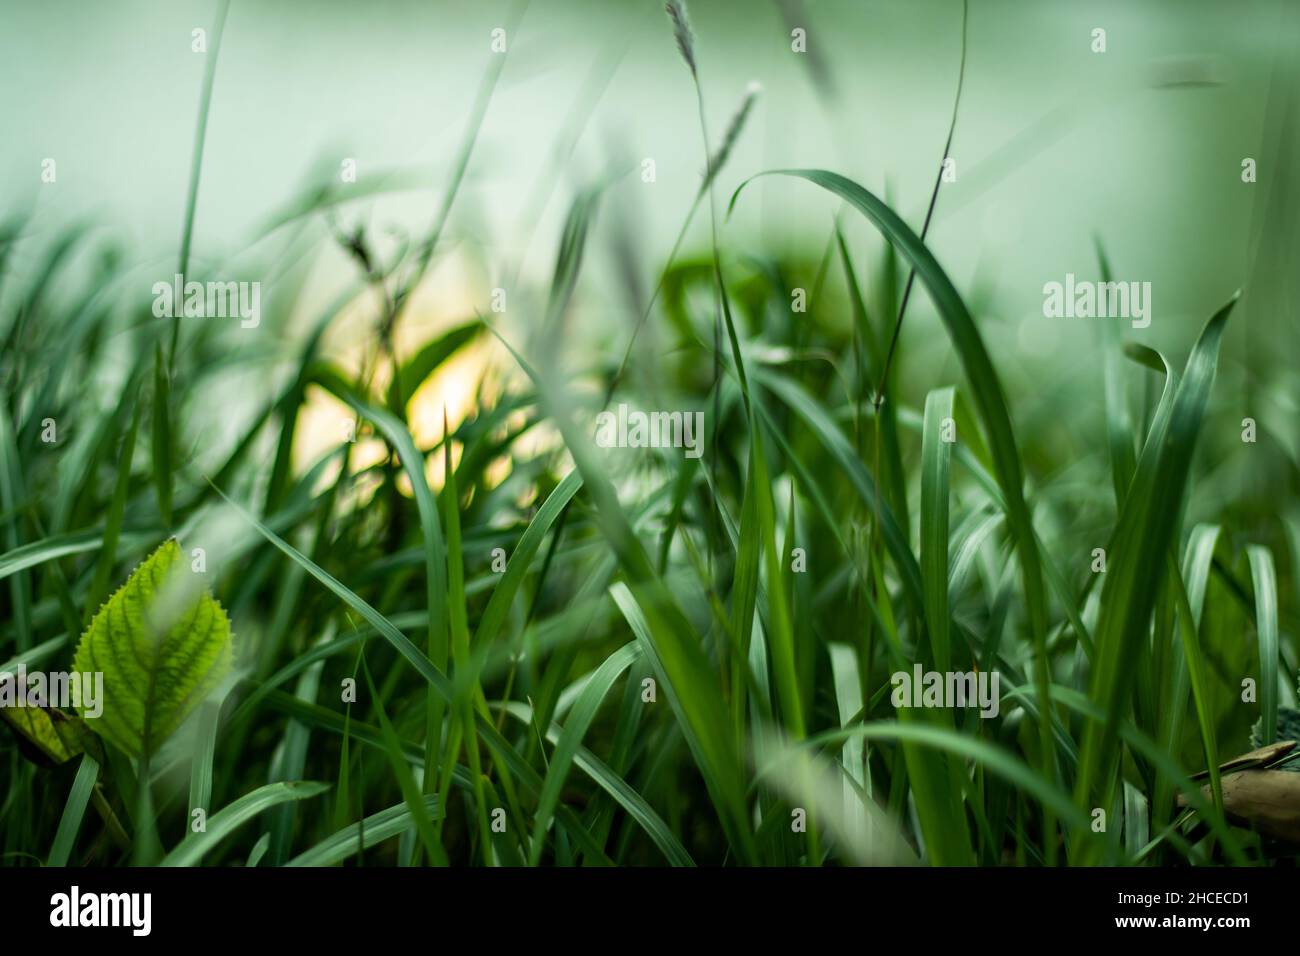 Molti tipi di erba verde e alba dietro l'erba. Lascia la mattina presto appena prima dell'alba o all'alba come il momento migliore che lascia la mattina presto Foto Stock